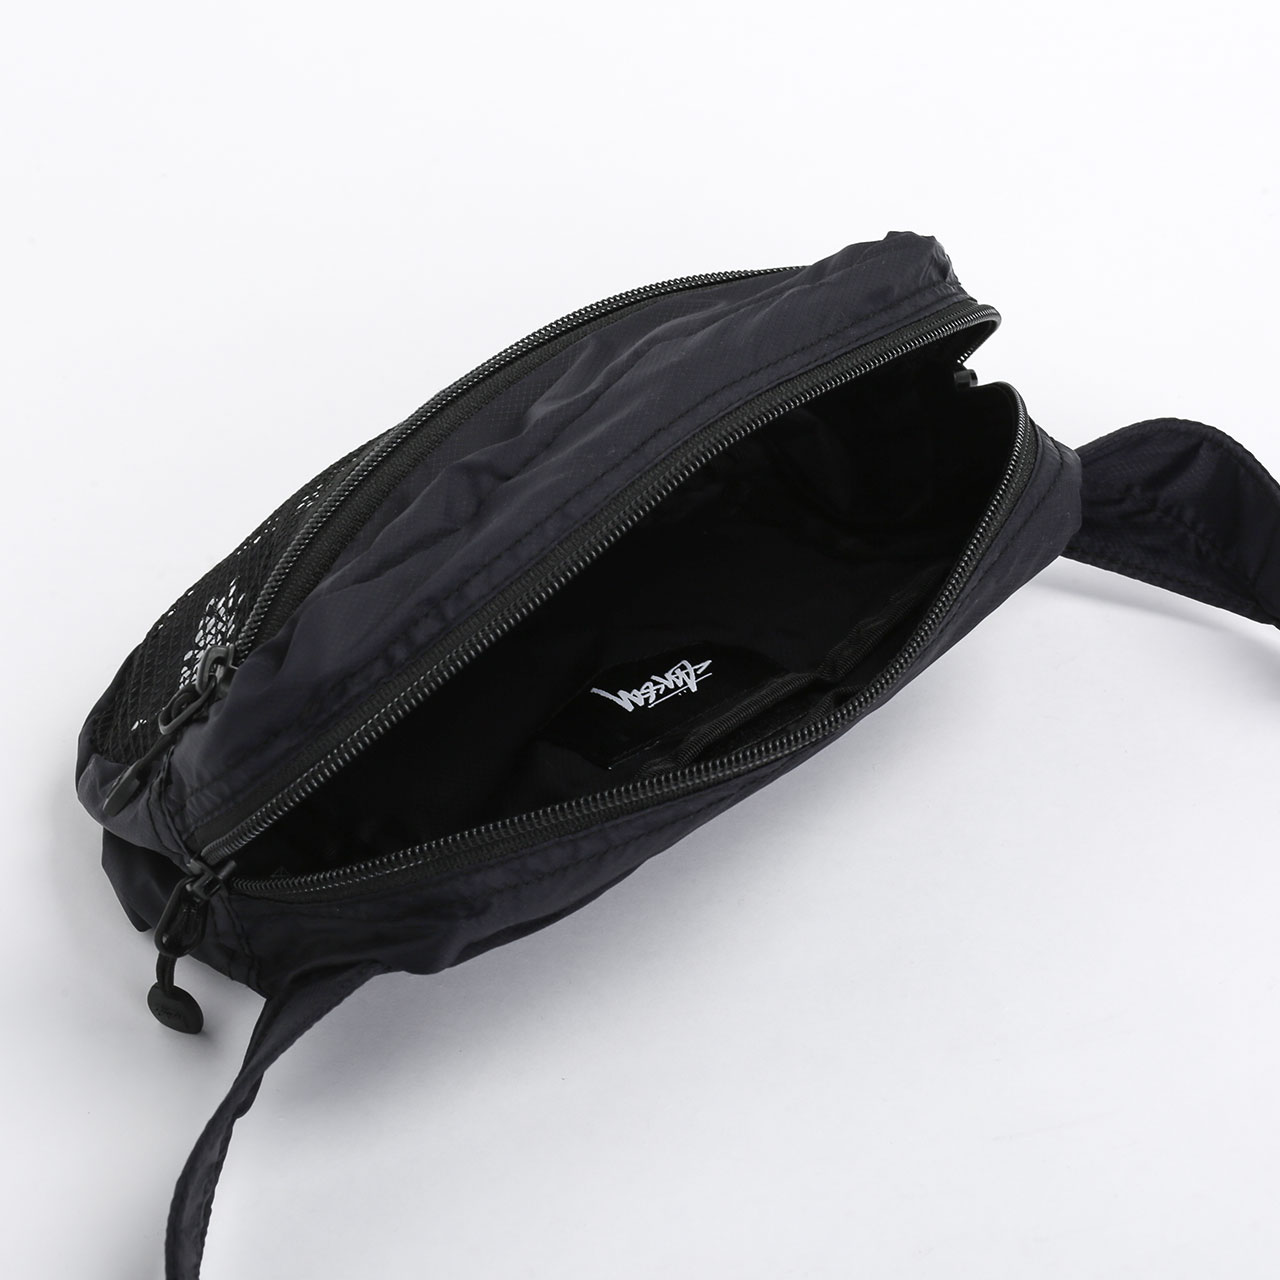  черная сумка Stussy Light Weight Waist Bag 134210-black - цена, описание, фото 4